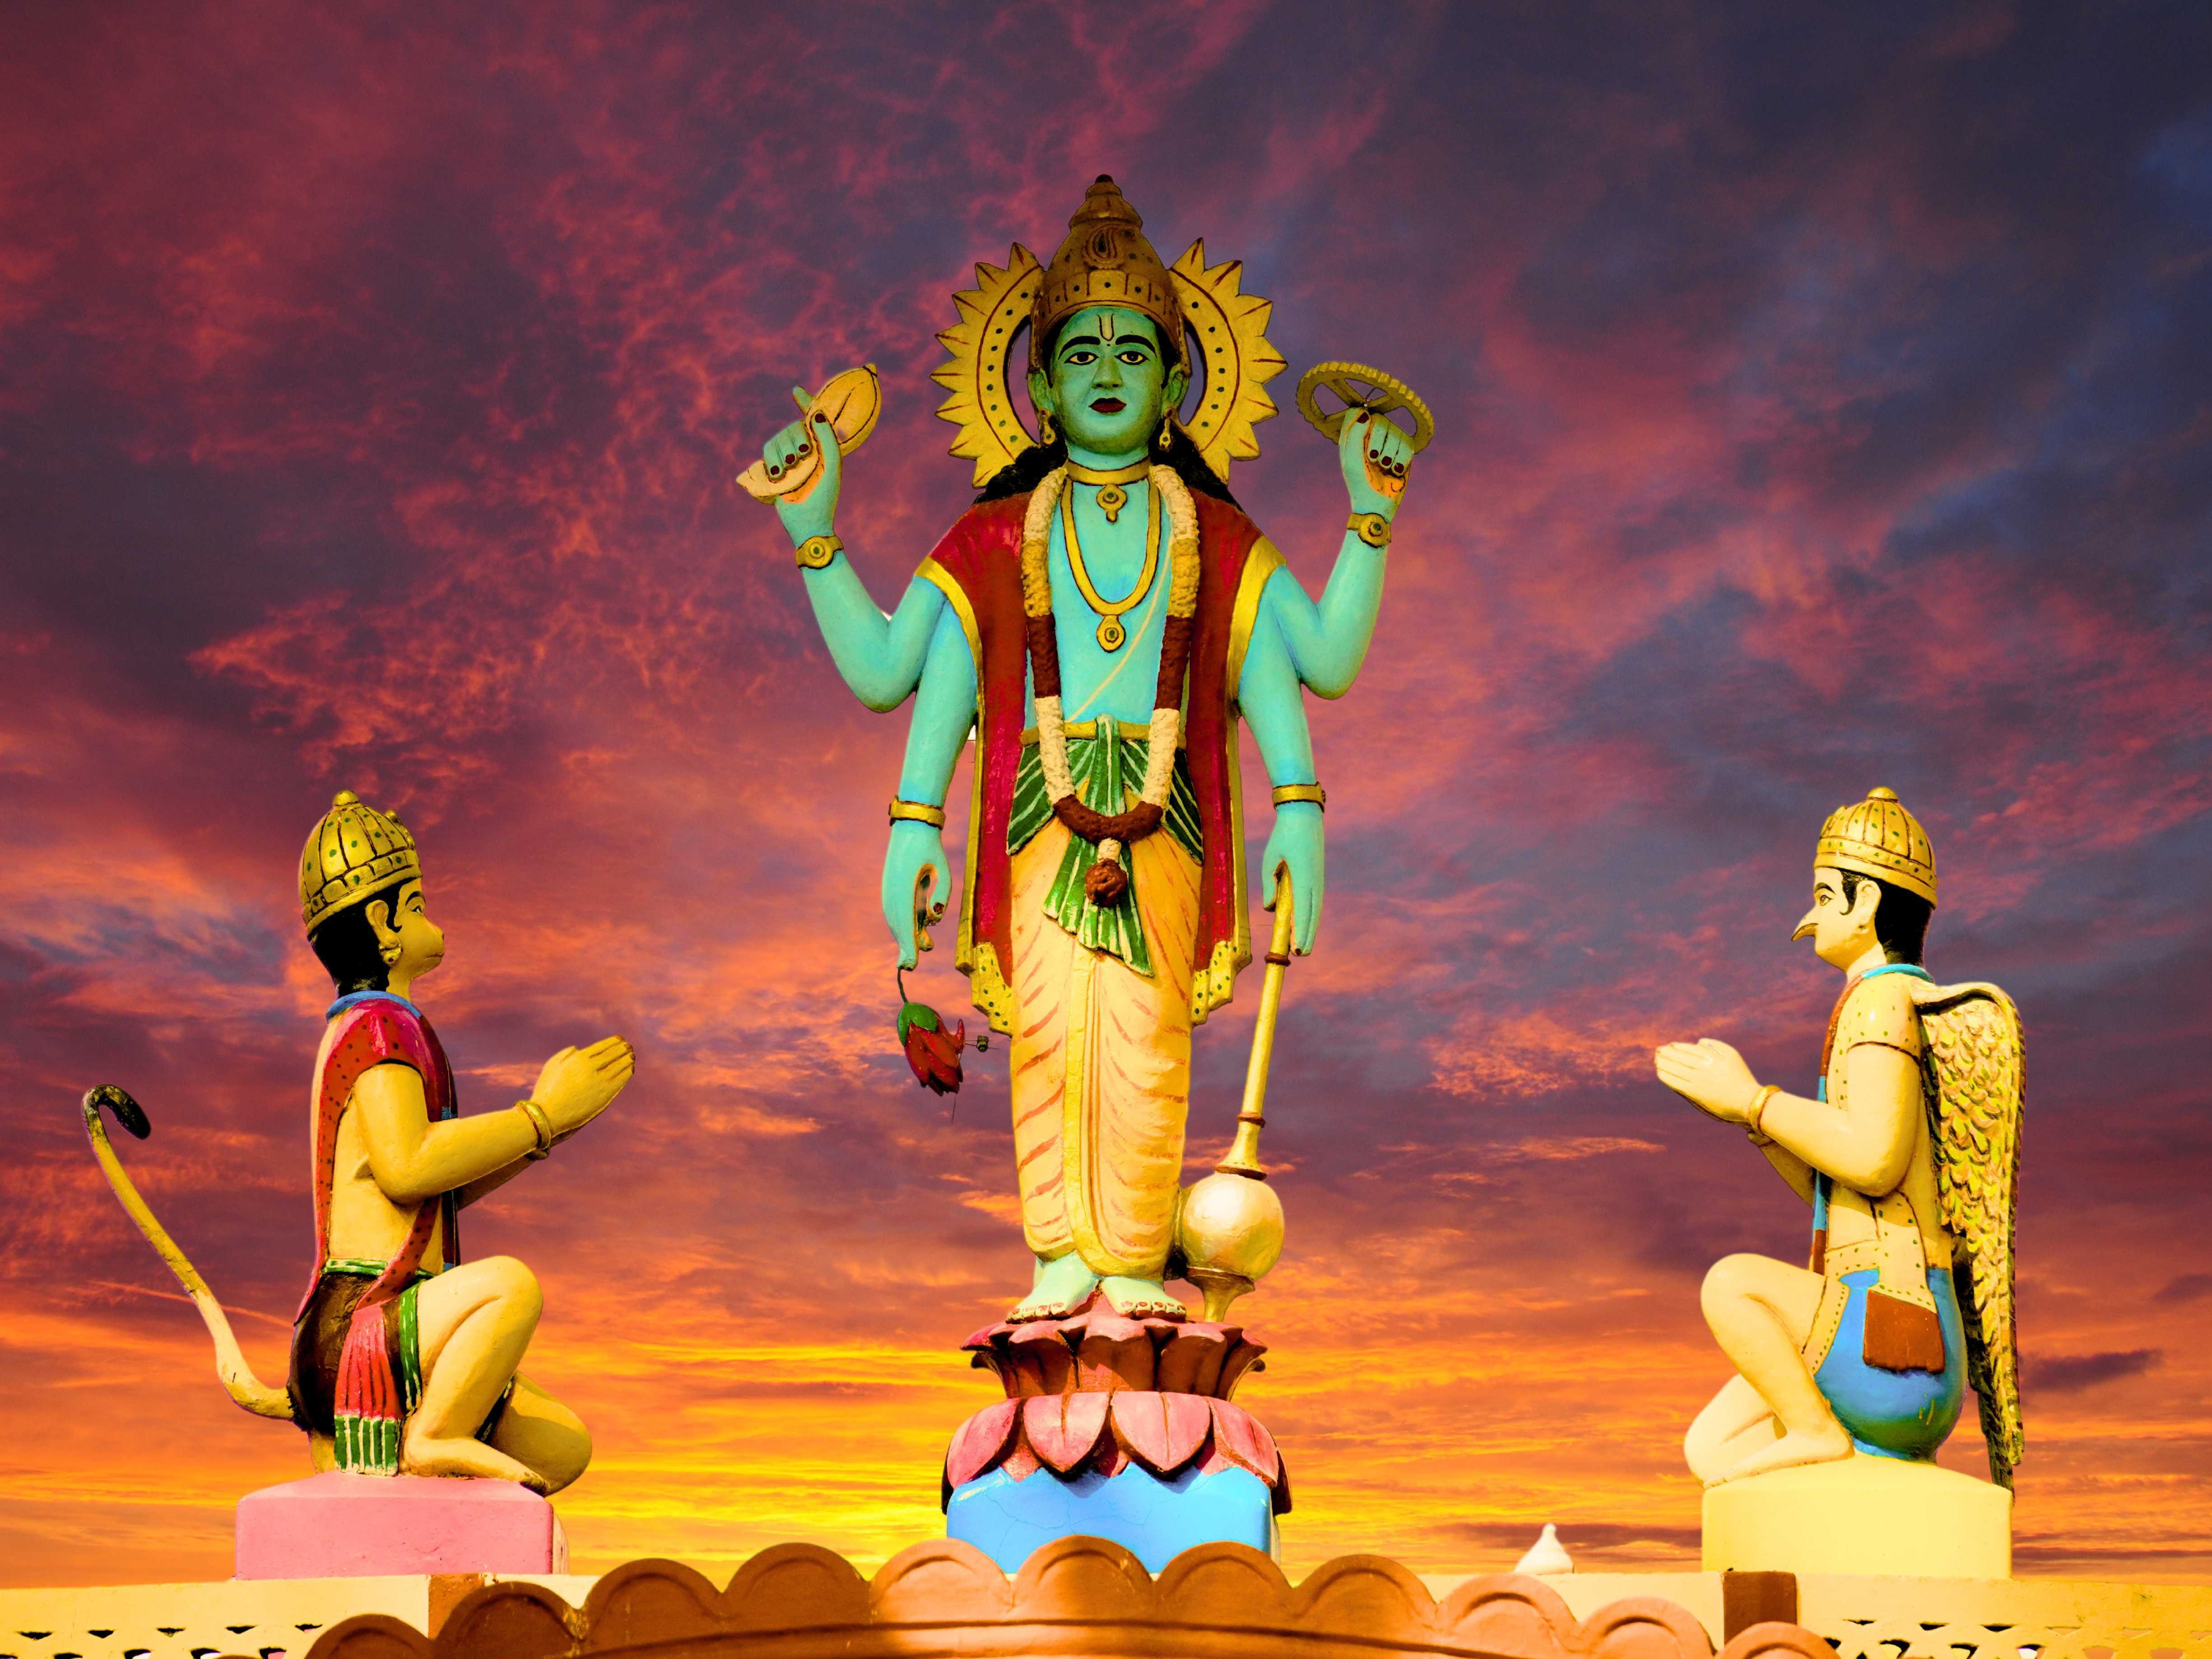 Representação do deus Vishnu